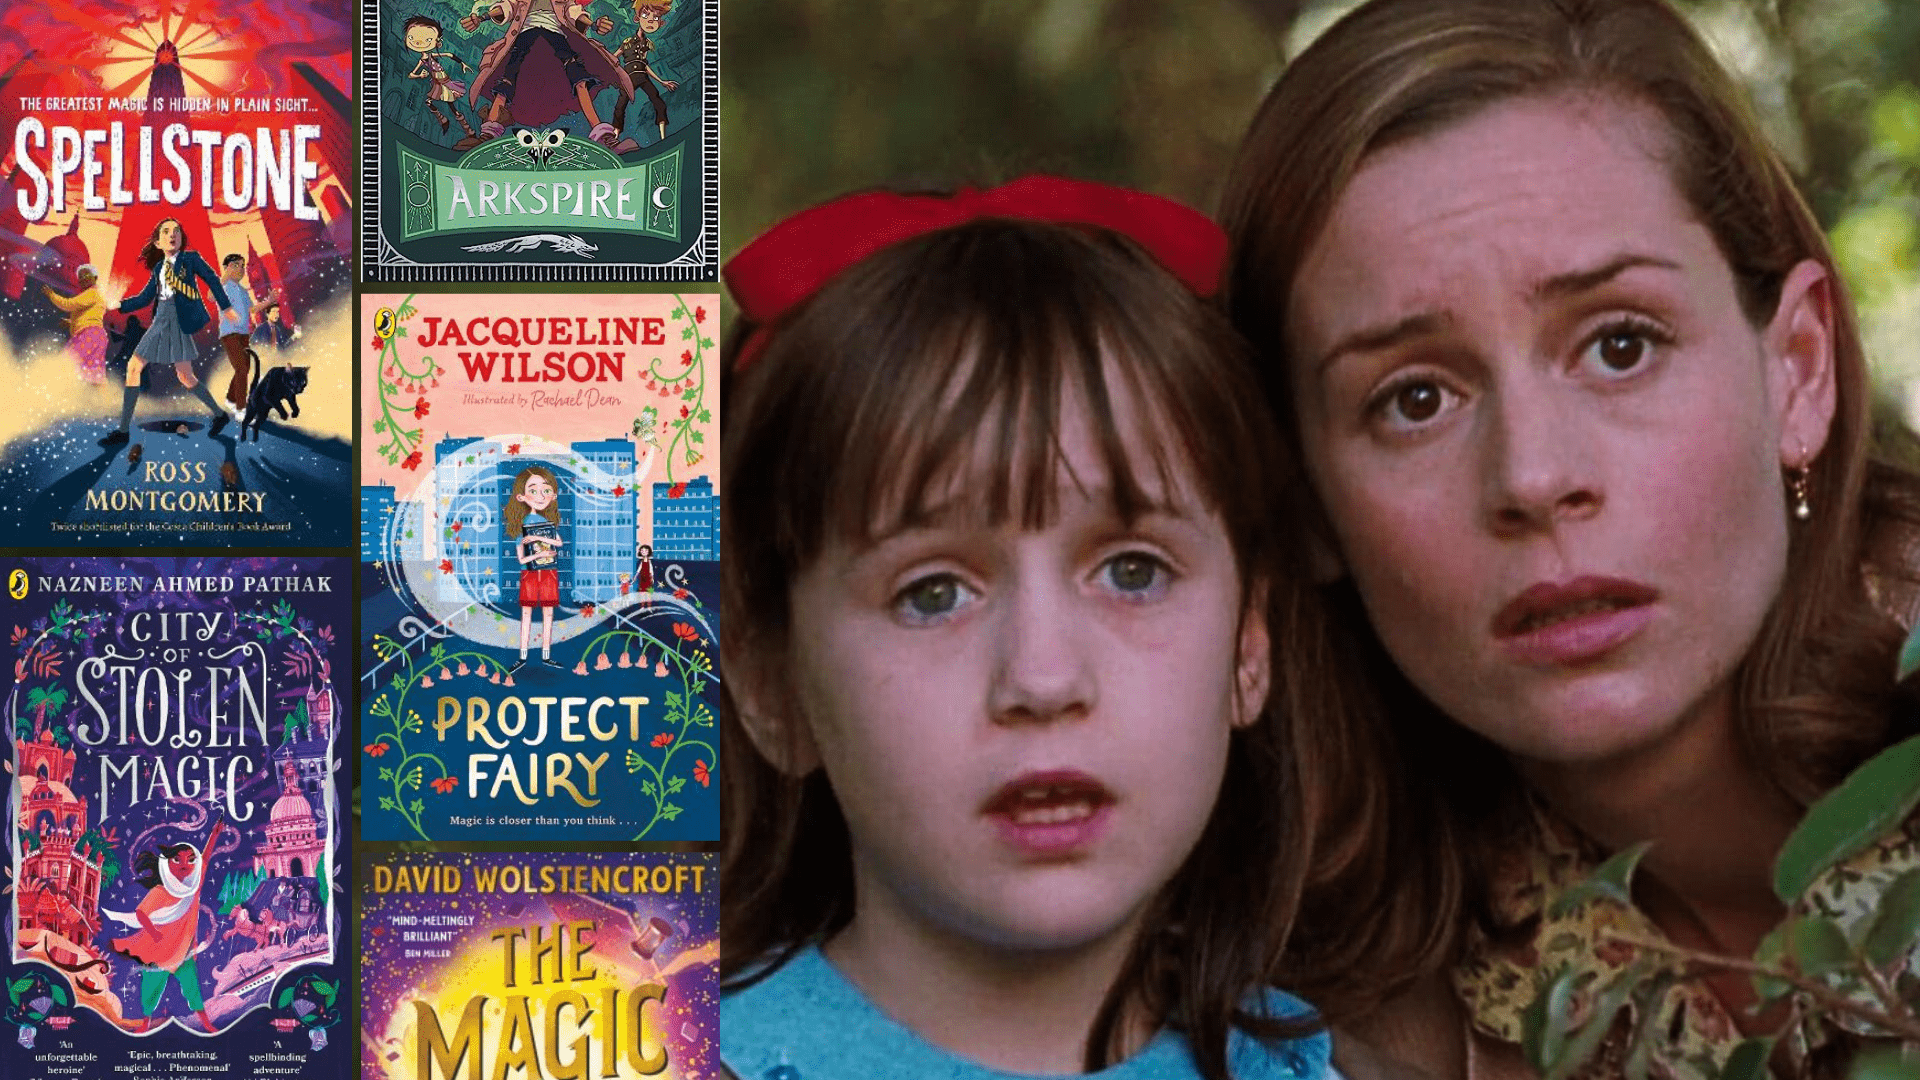 Fantasy Books For Matilda Fans - 13 Fantasy Books Full Of Magic For Fans Of Roald Dahl’s Matilda